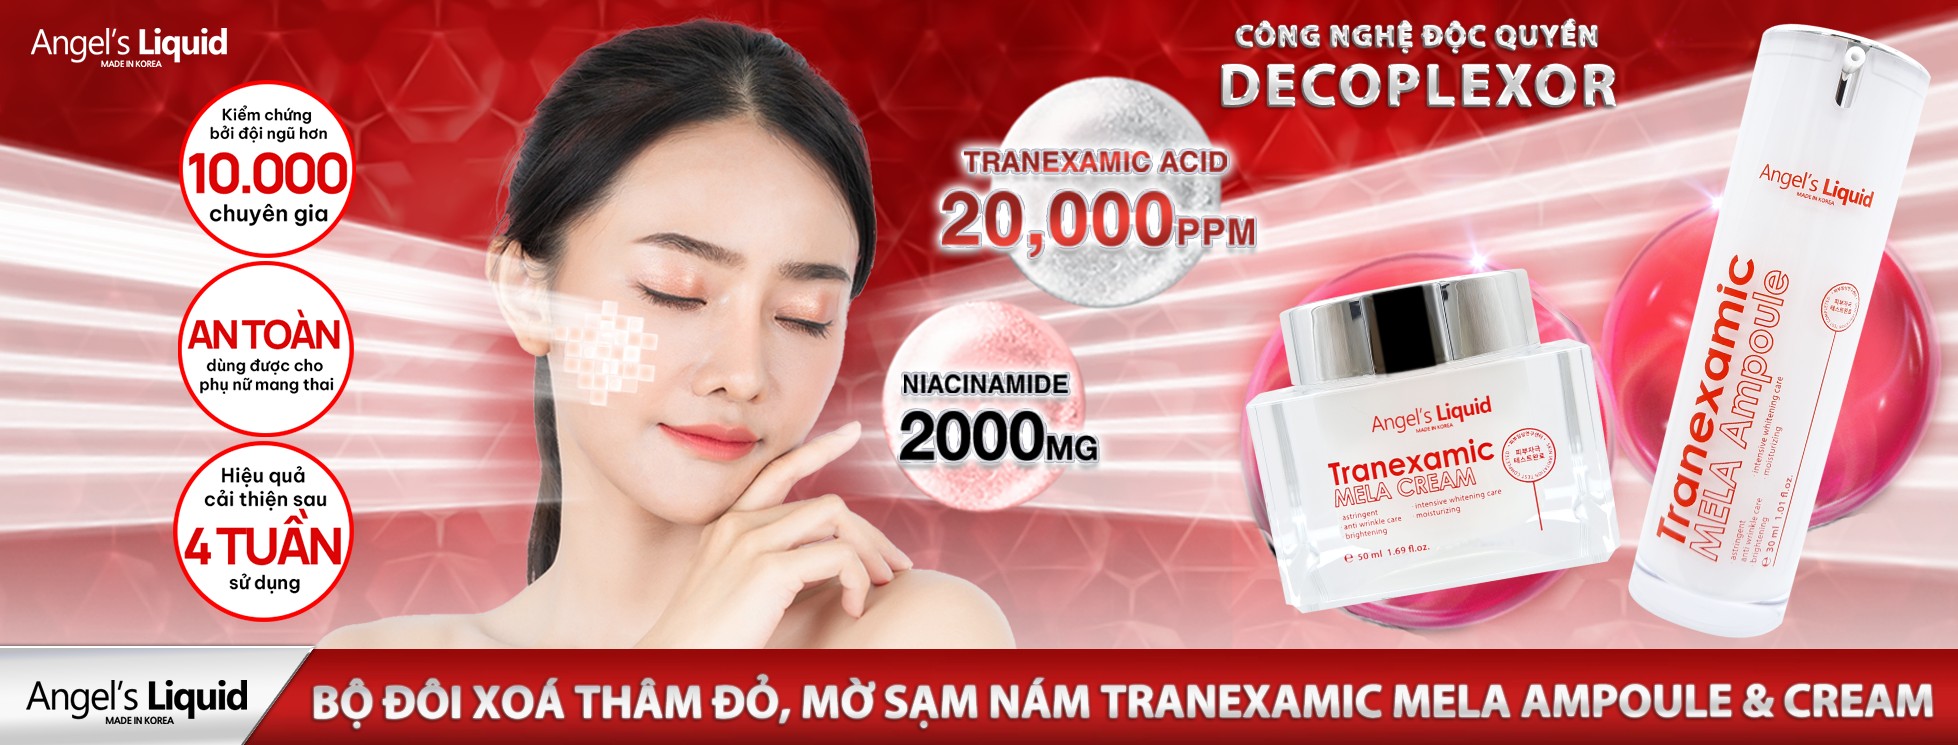 Angel Liquid Glutathione Plus Niacinamide Fresh Deodorant Vượt Qua 1 Vòng Kiểm Nghiệm Gắt Gao Của Viện Da Liễu Hàng Đầu Tại Hàn Quốc, Chứng Nhận Hoàn Toàn Lành Tính Trên Mọi Loại Da Kể Cả Làn Da Nhạy Cảm Dễ Bị Kích Ứng.